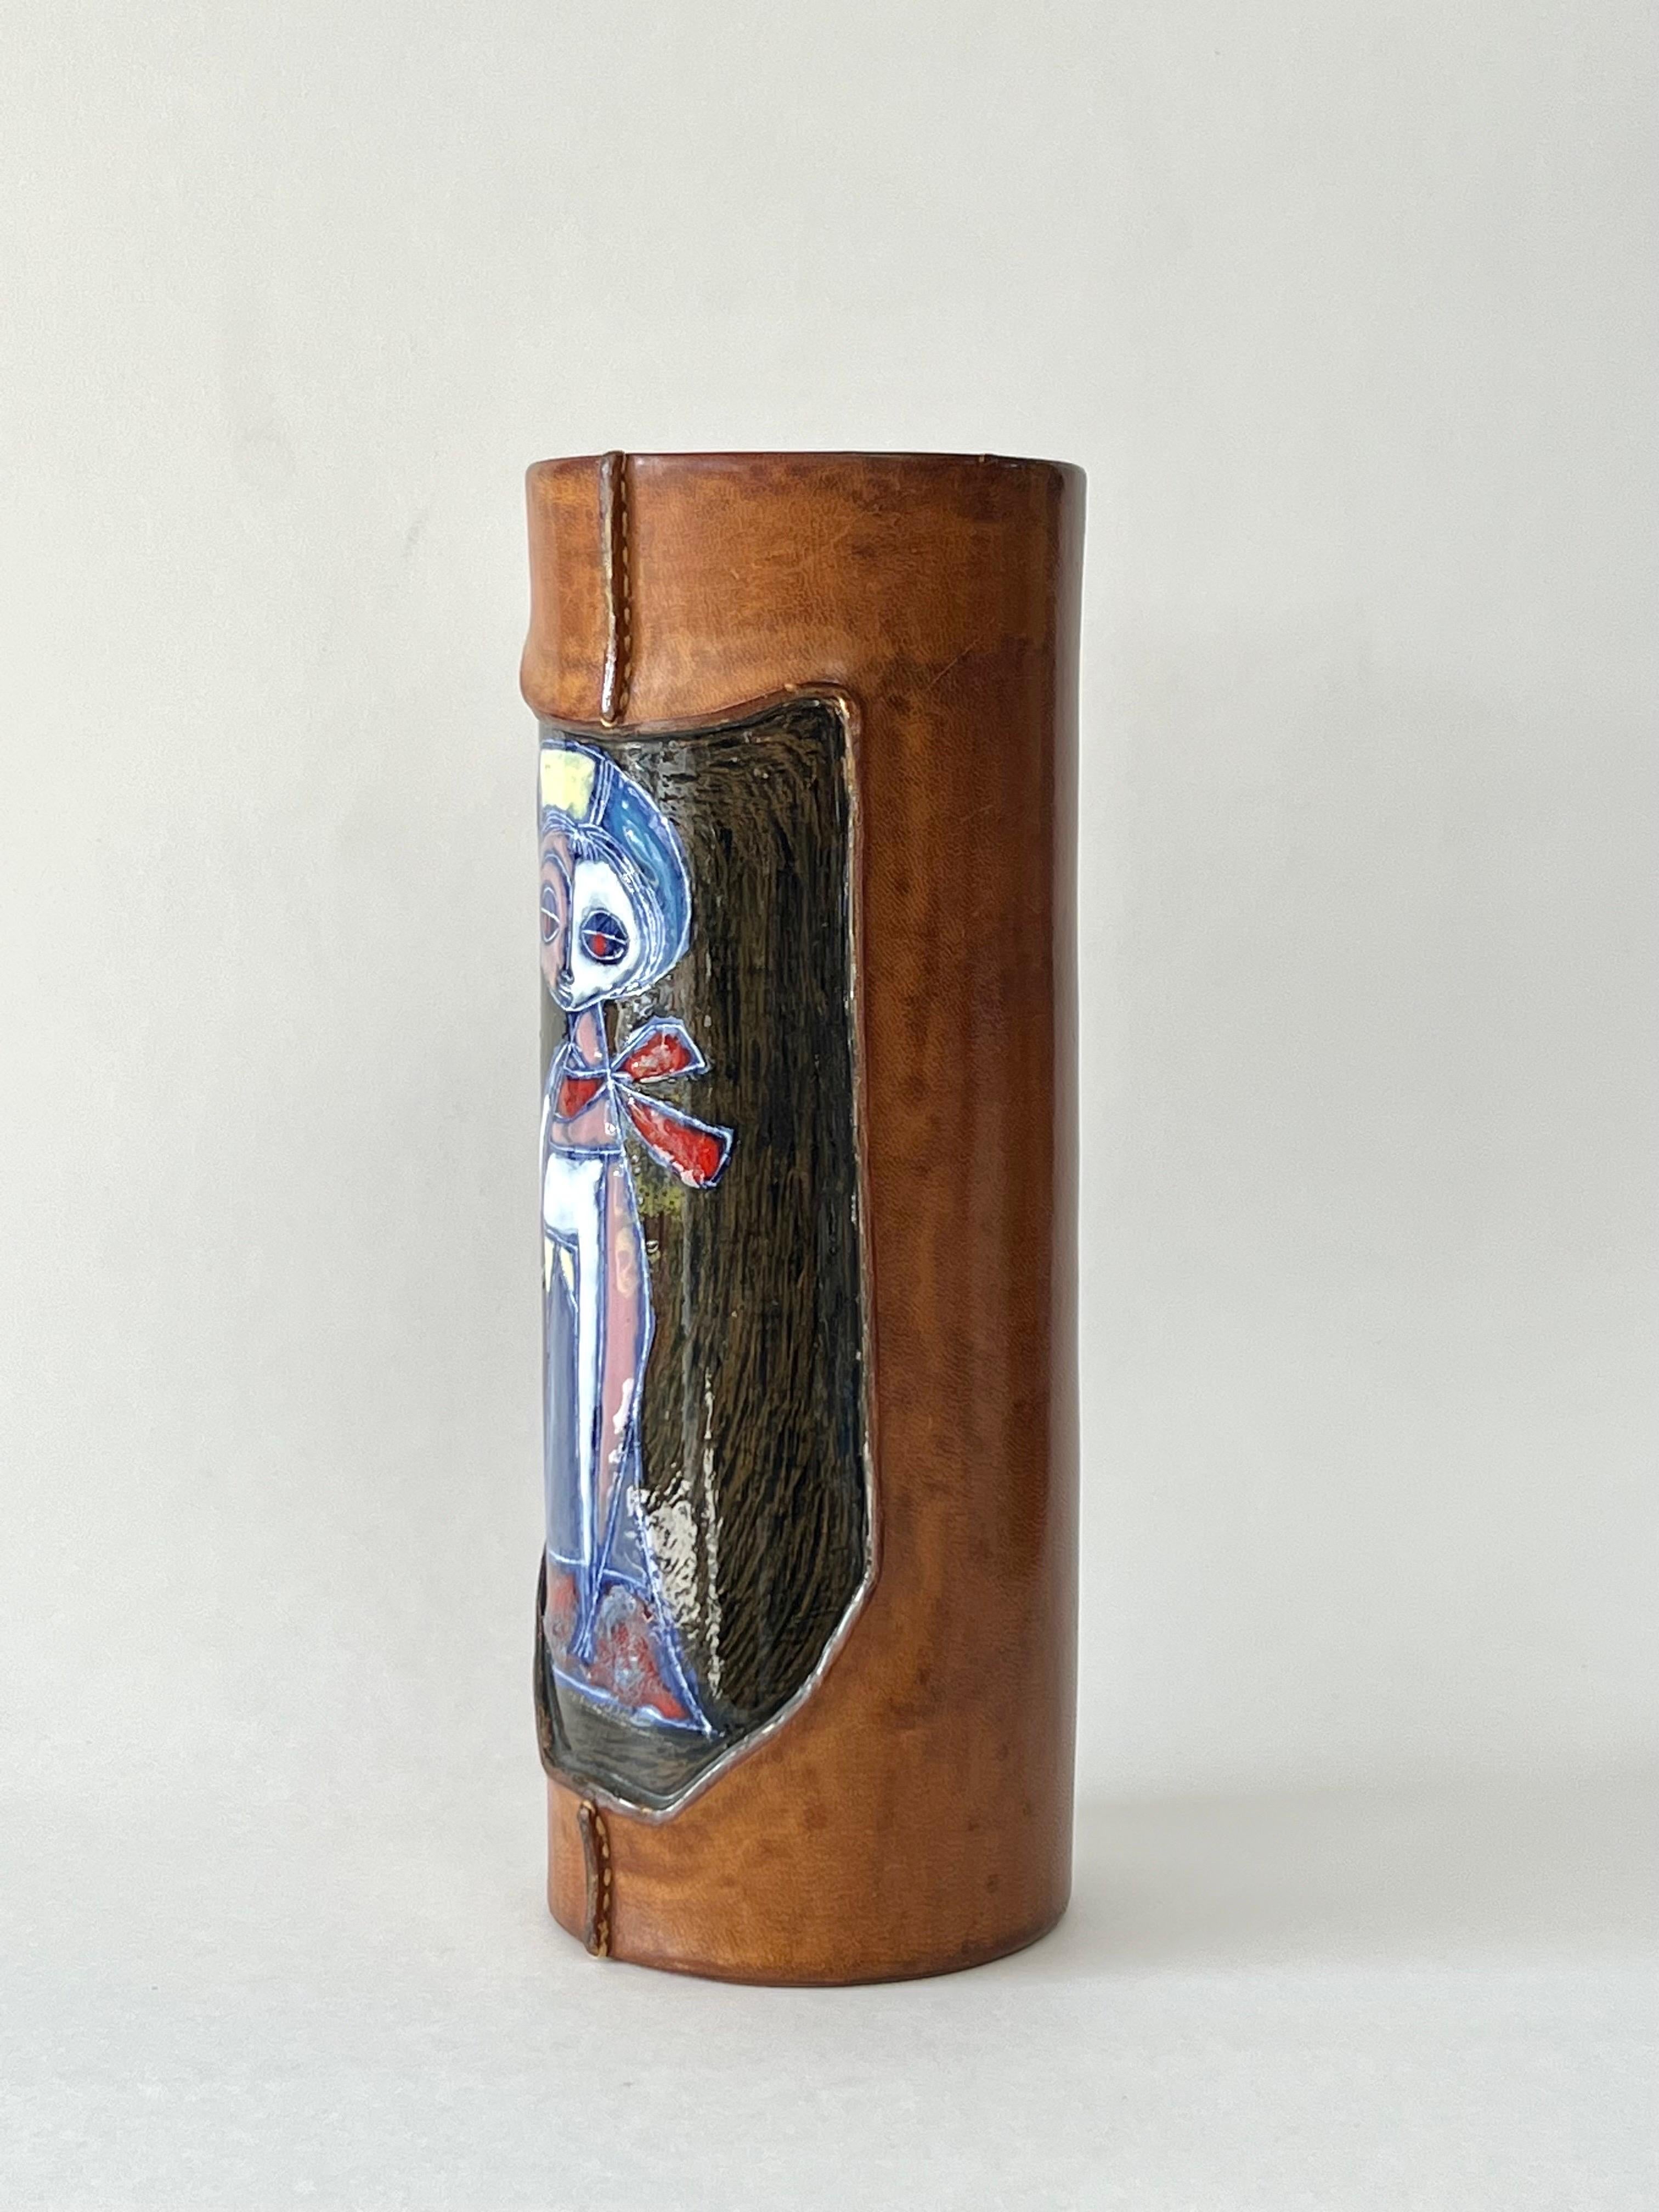 Eine zylindrische Vase von Marcello Fantoni. 
Sie besteht aus Keramik und ist teilweise mit Leder umhüllt. Das Leder lässt eine stilvolle Frau erscheinen, die den Betrachter direkt anschaut. Signiert am Boden.